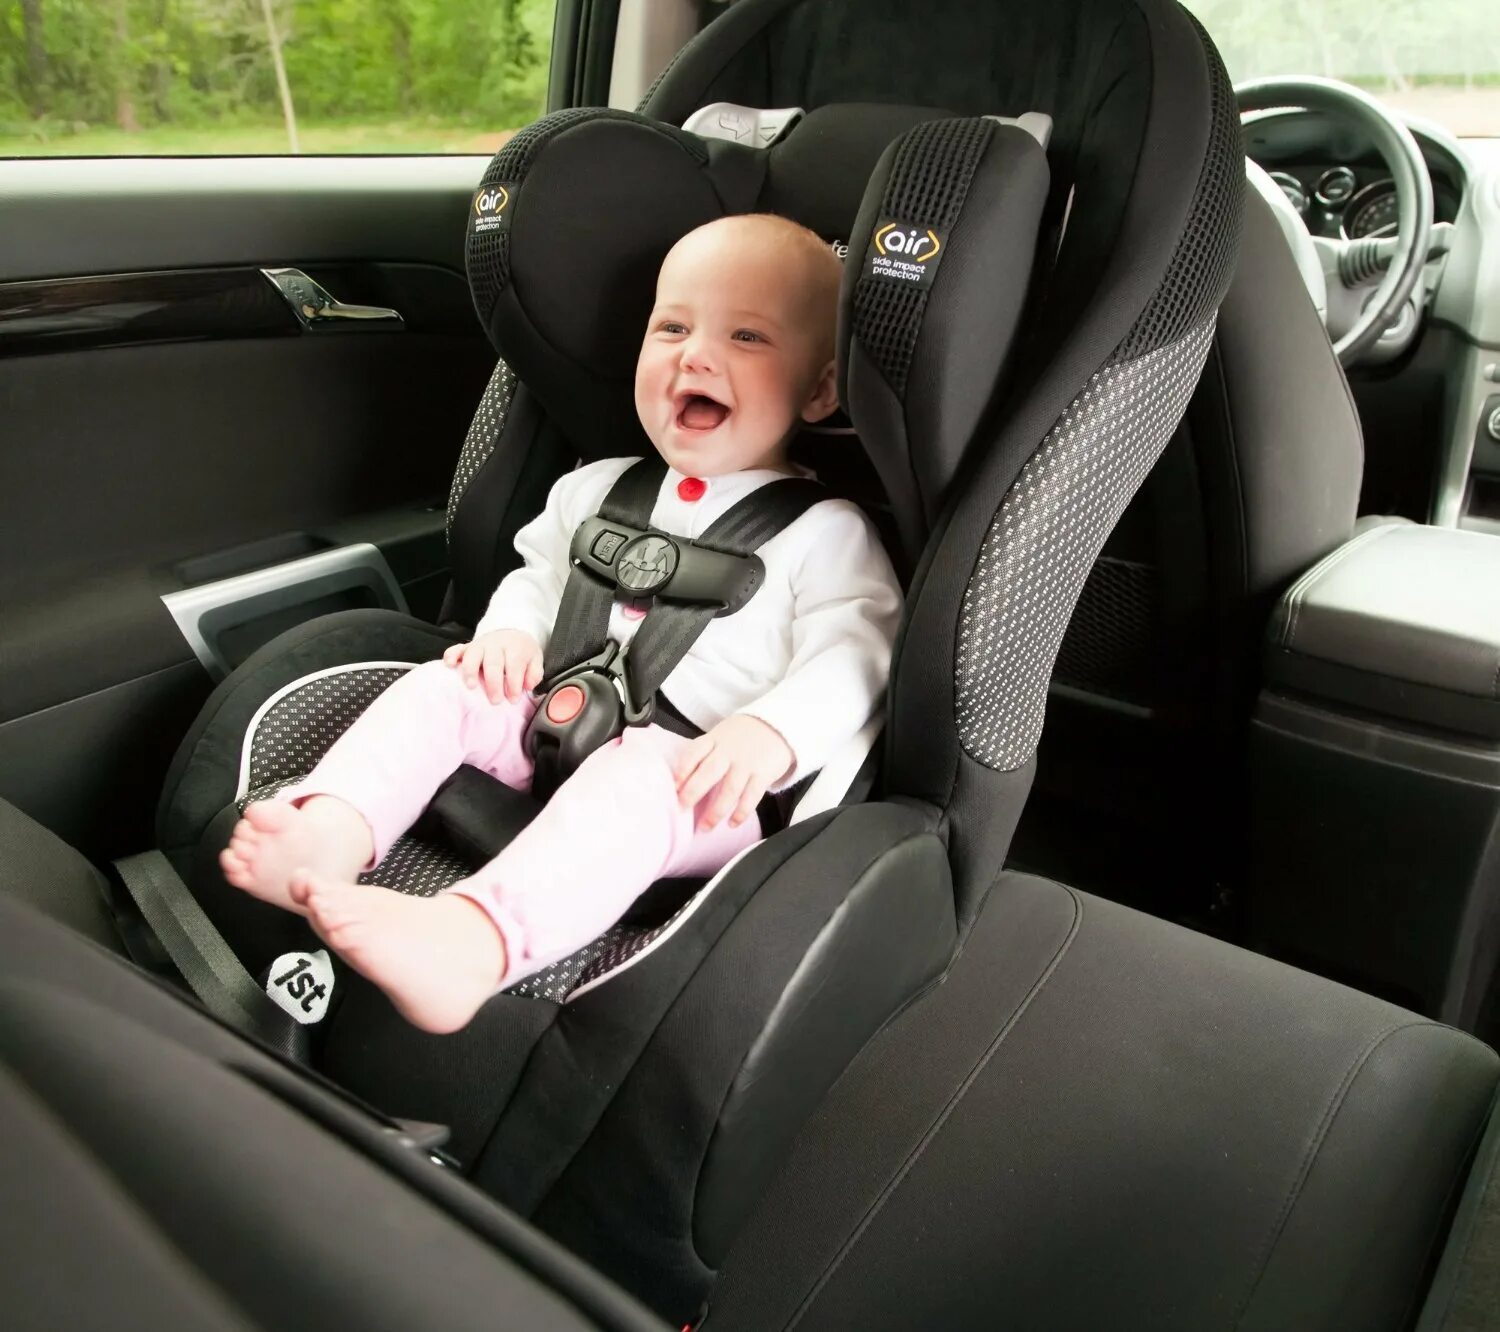 Baby Safety Seat. Baby car Seat. Детское кресло в машину. Ребенок в автокресле. Сажать ребенка на переднее кресло можно